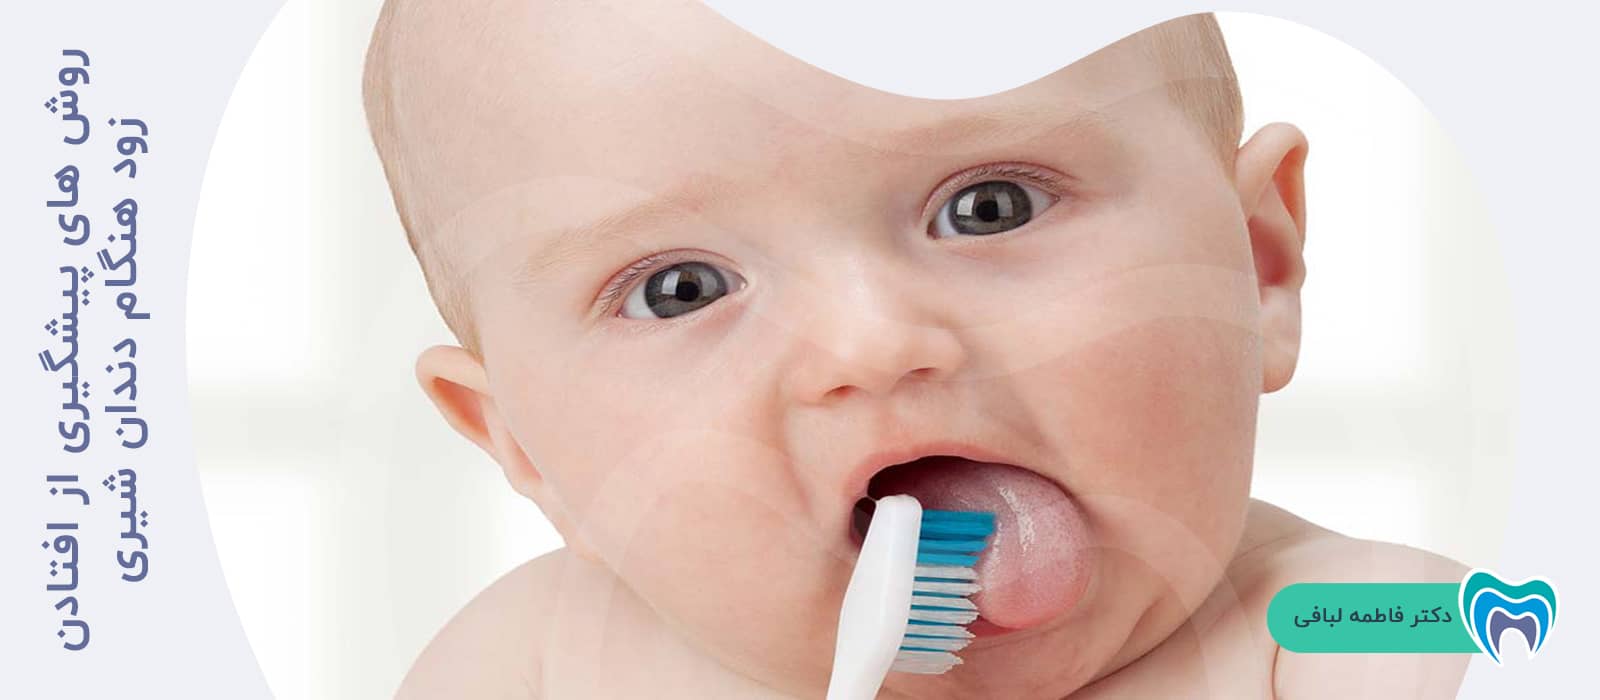 روش های پیشگیری از افتادن زود هنگام دندان شیری